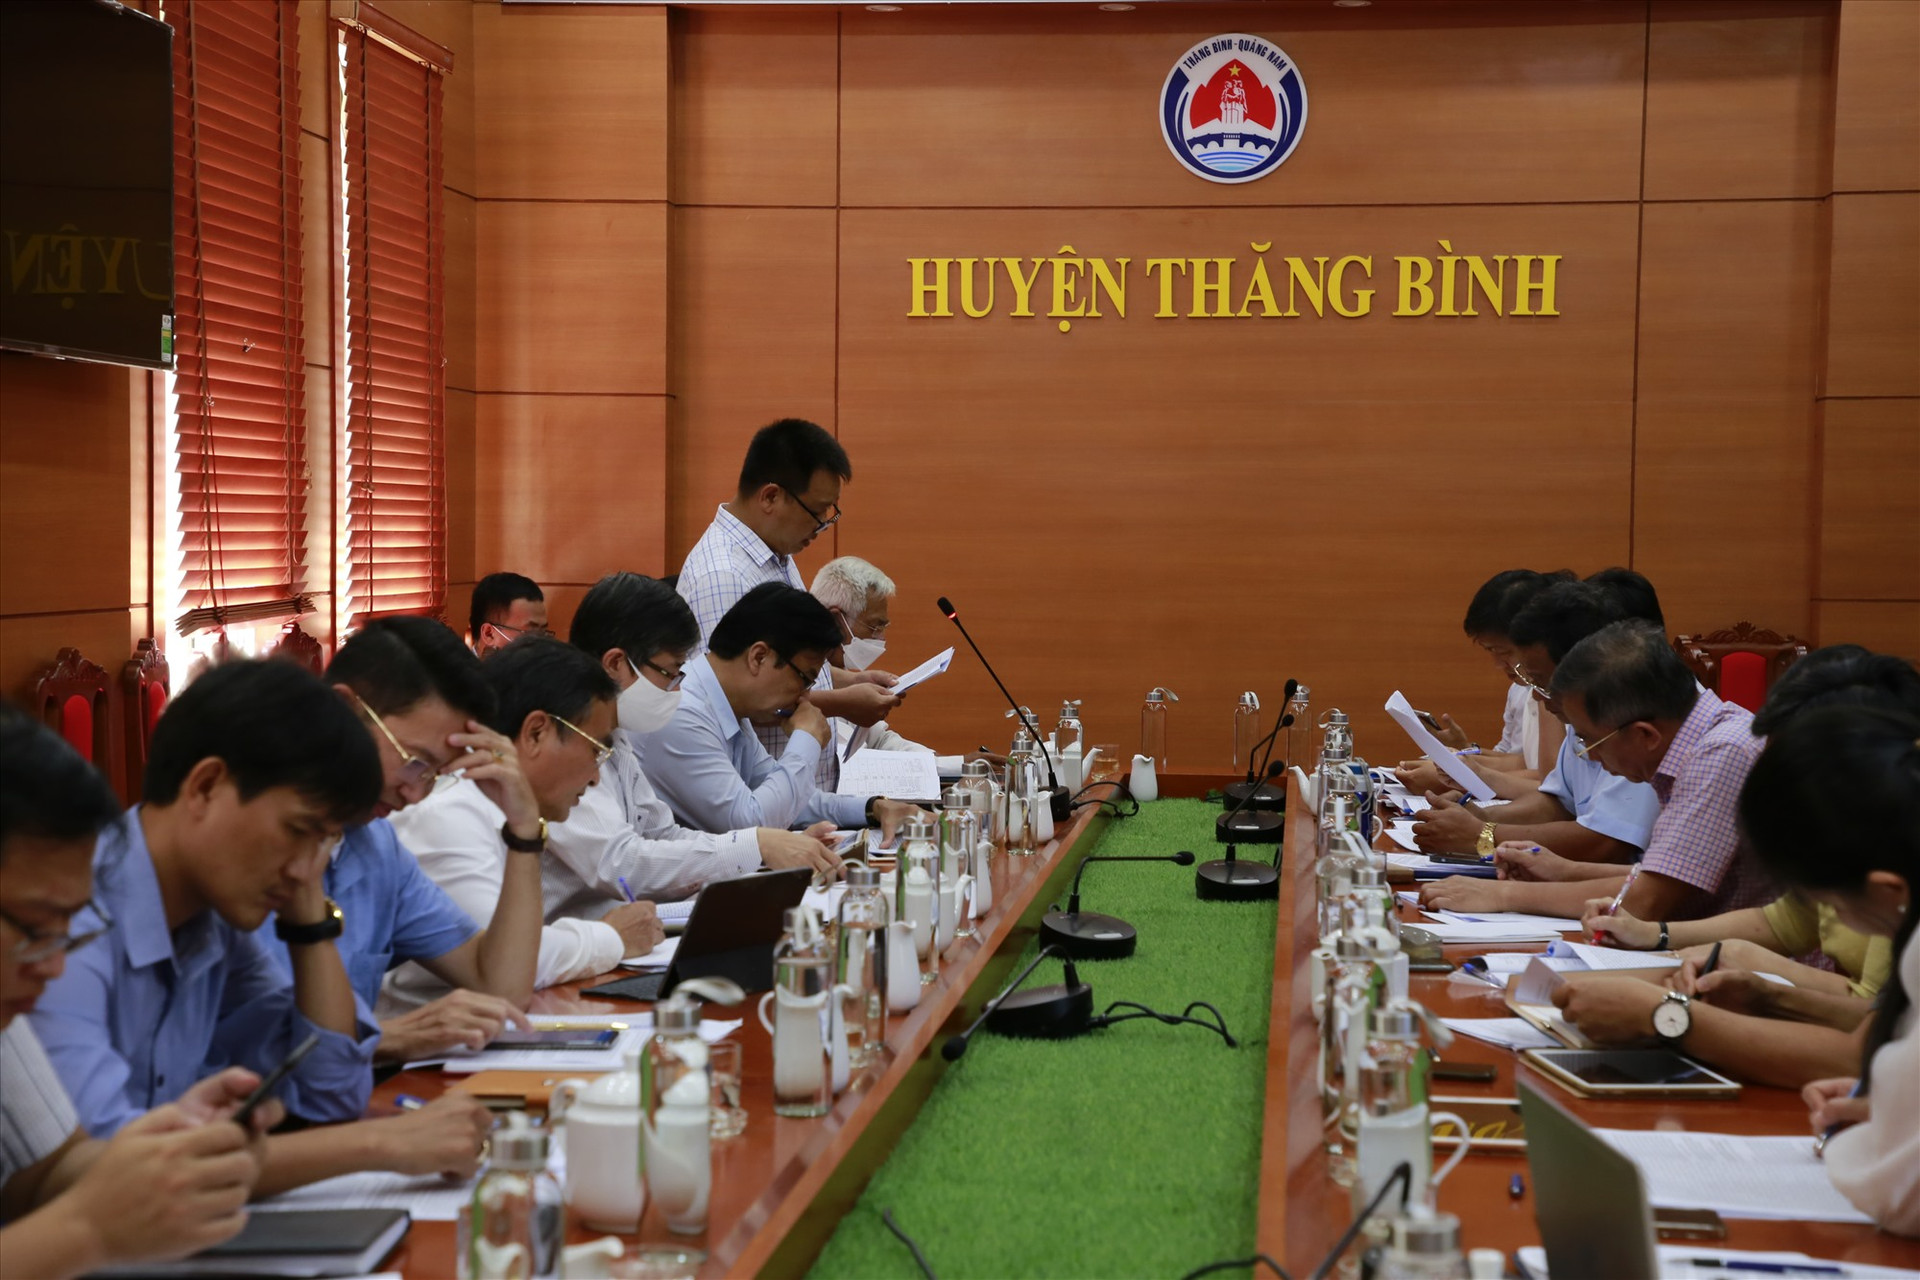 Đoàn giám sát làm việc với đại diện chính quyền huyện Thăng Bình. Ảnh: T.C